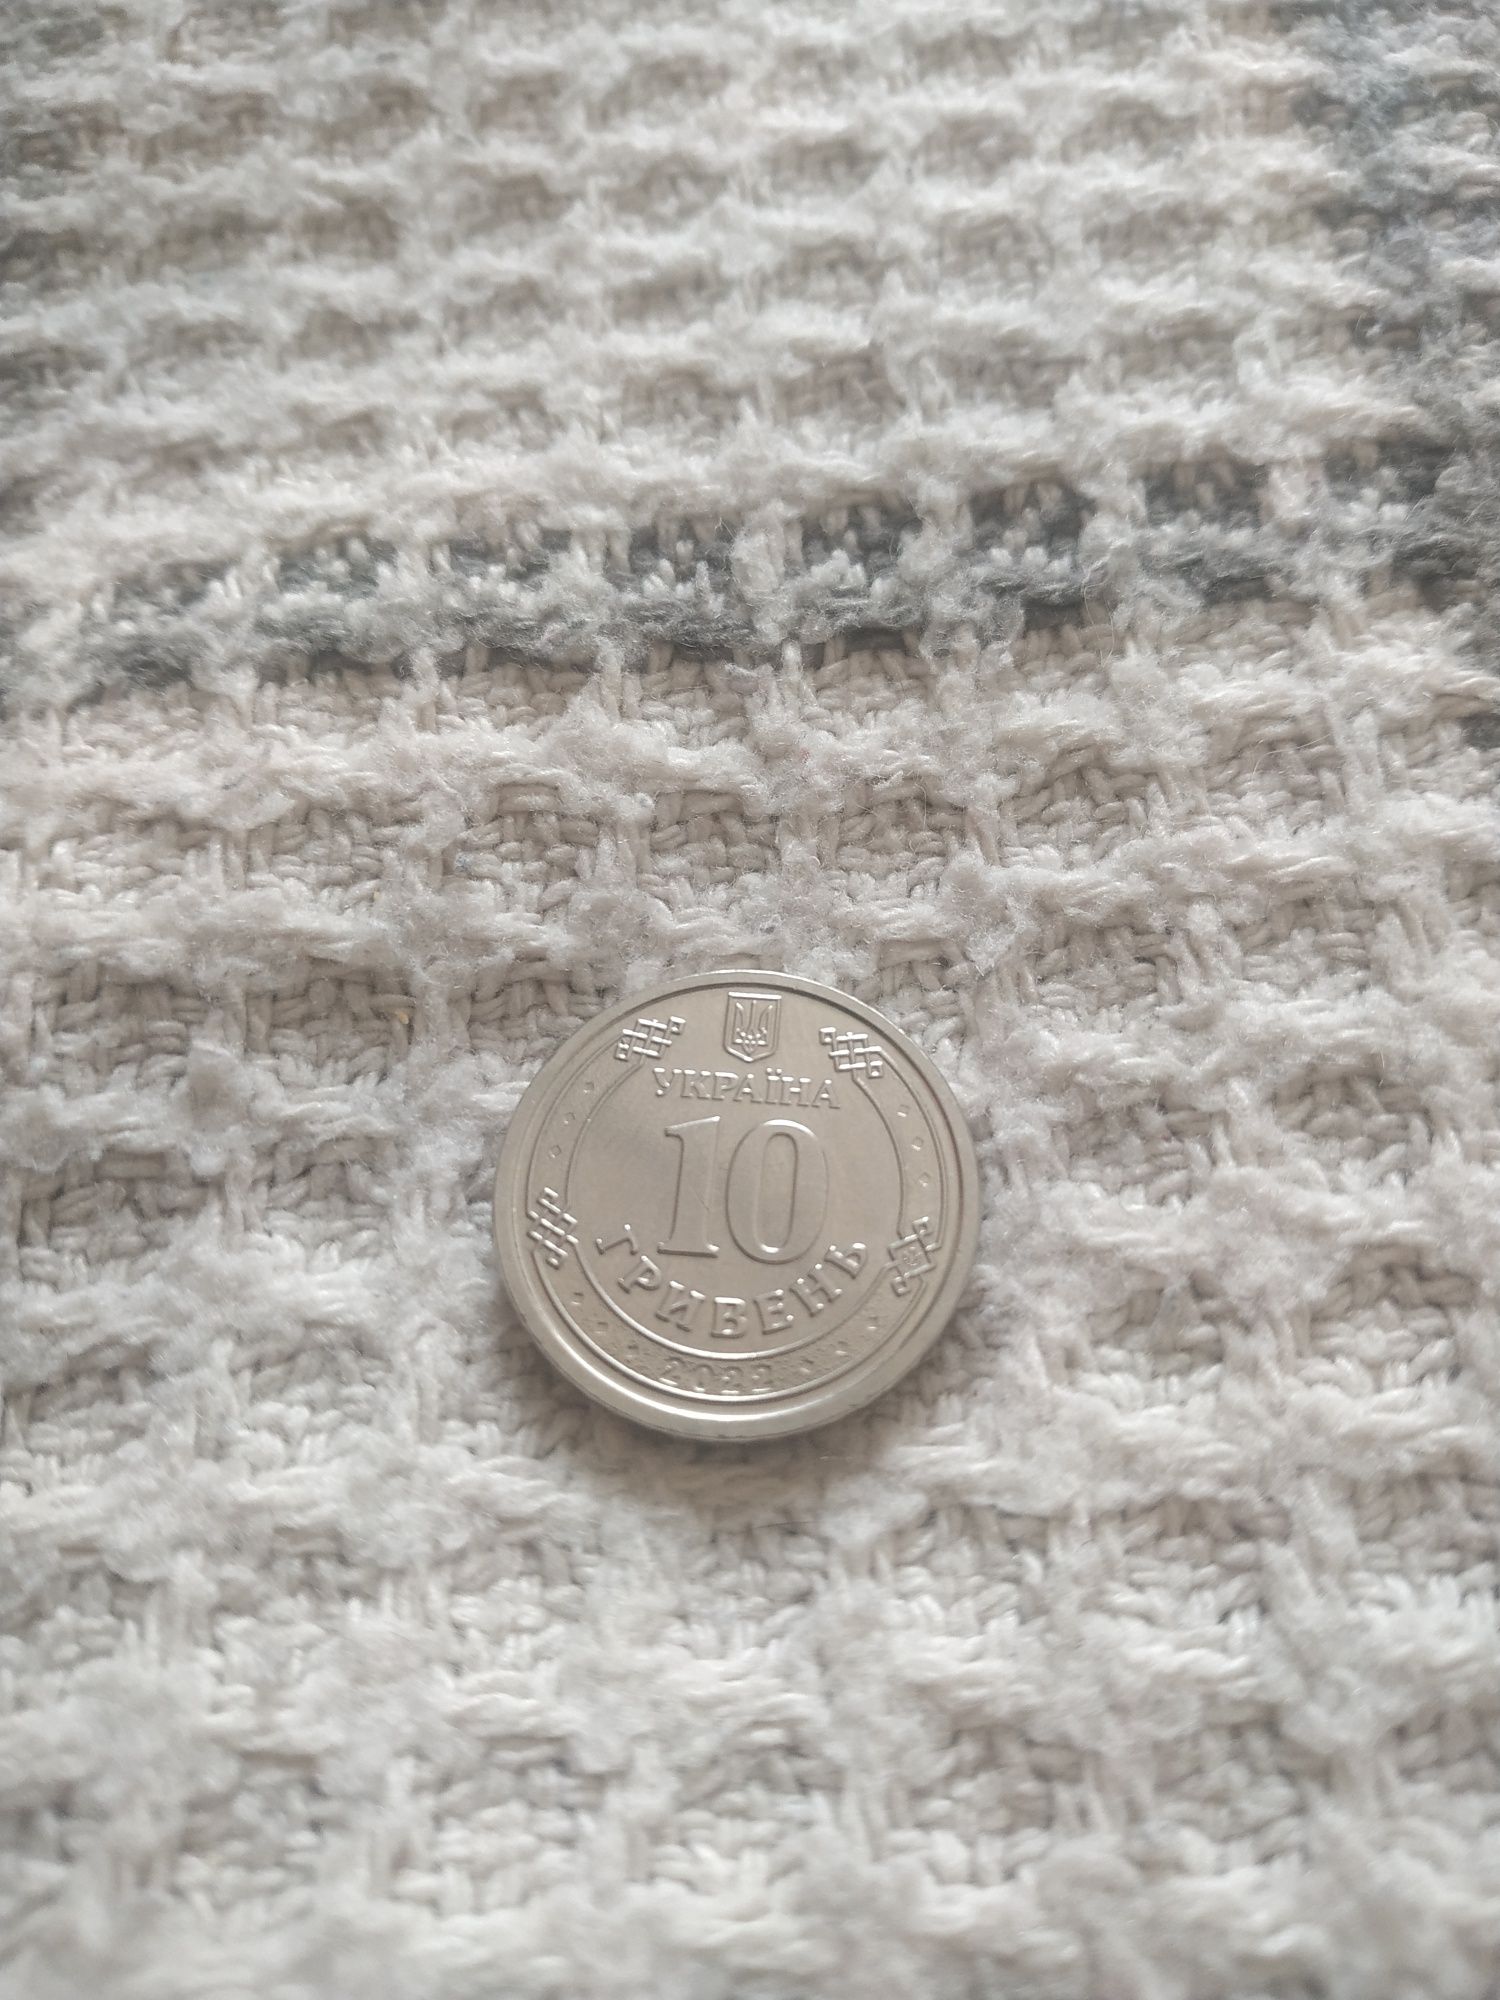 10 грн монета ЗСУ